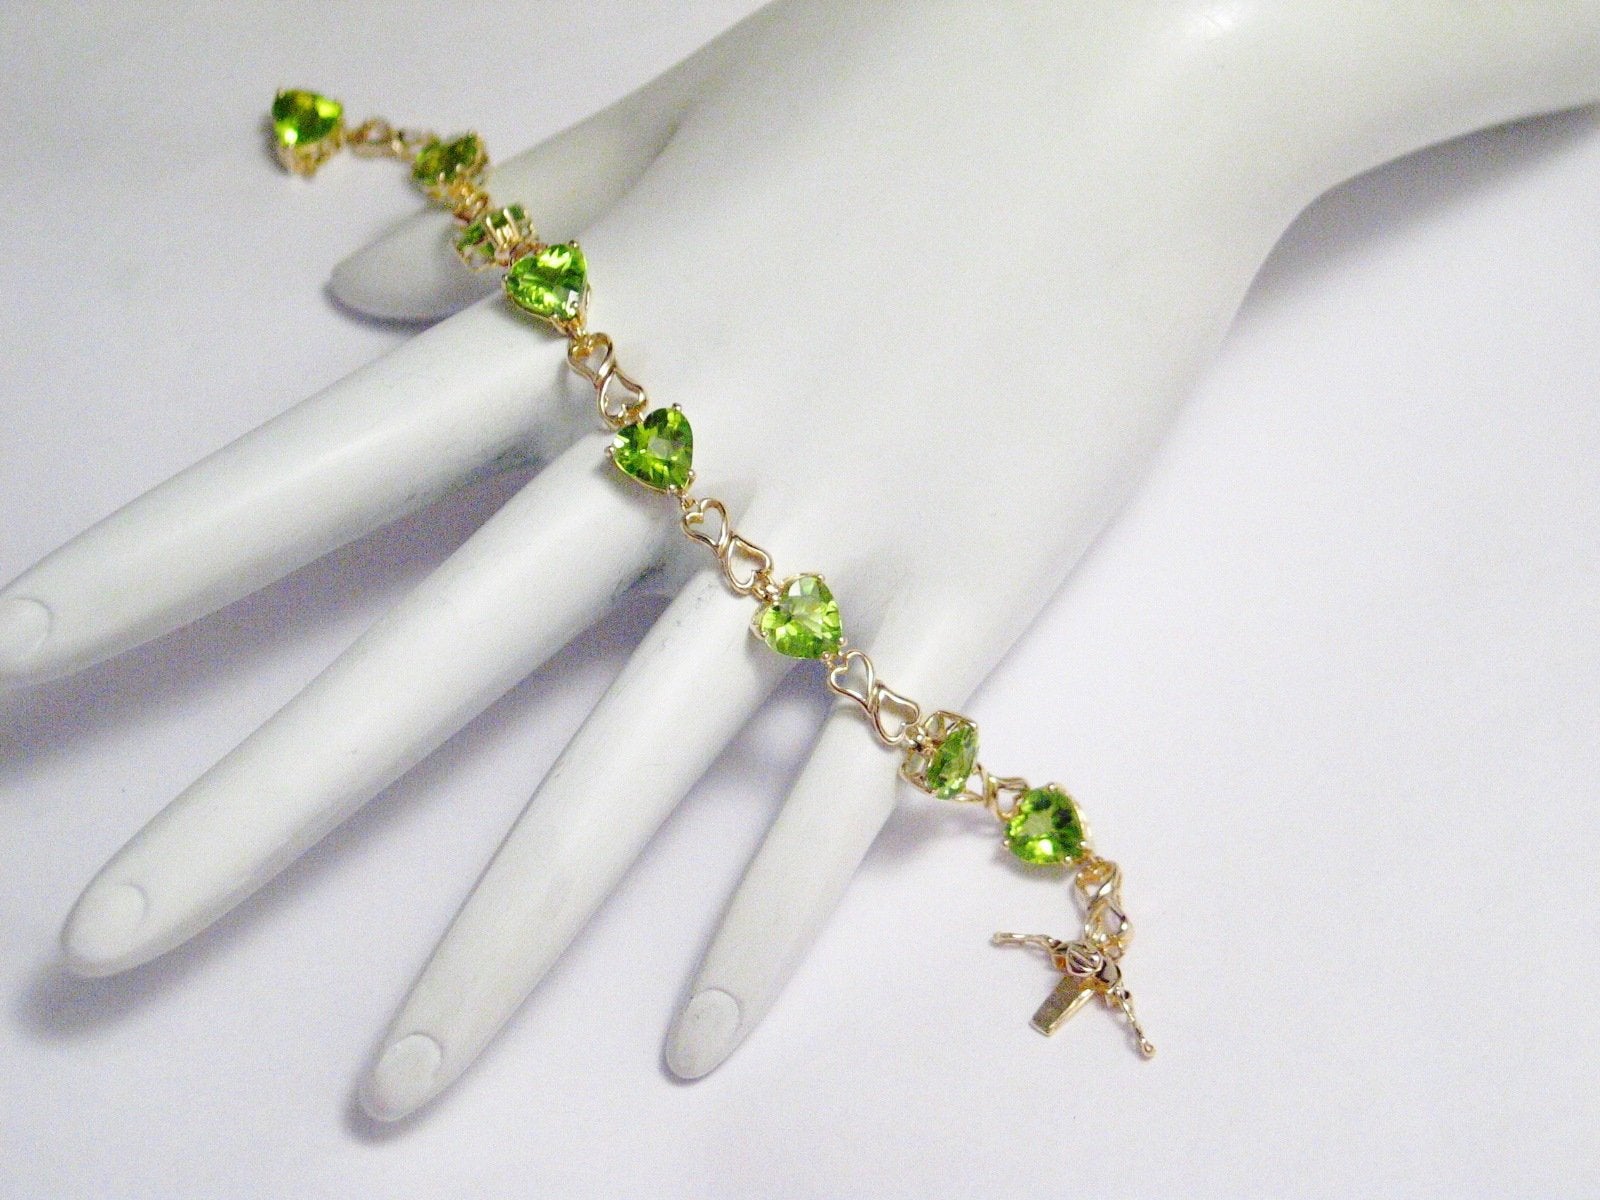 Green peridot gemstone 925 silver jewelry bracelet 7-8